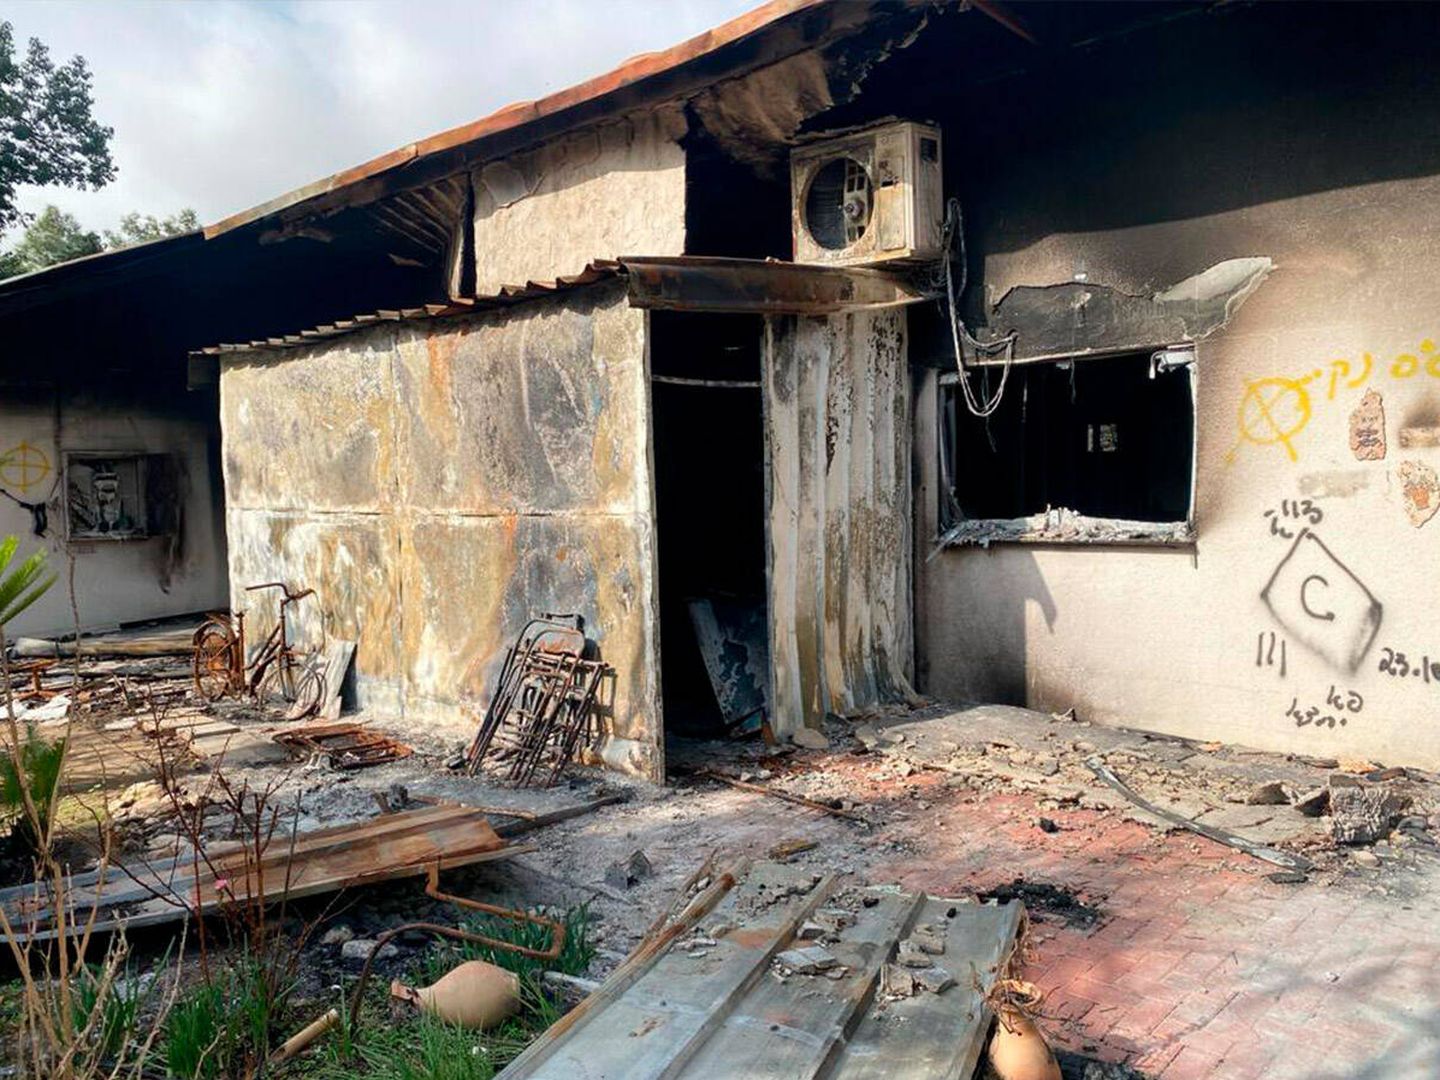 Otra de las casas atacadas en el 'kibutz' de Nir Oz. (A. Requeijo)